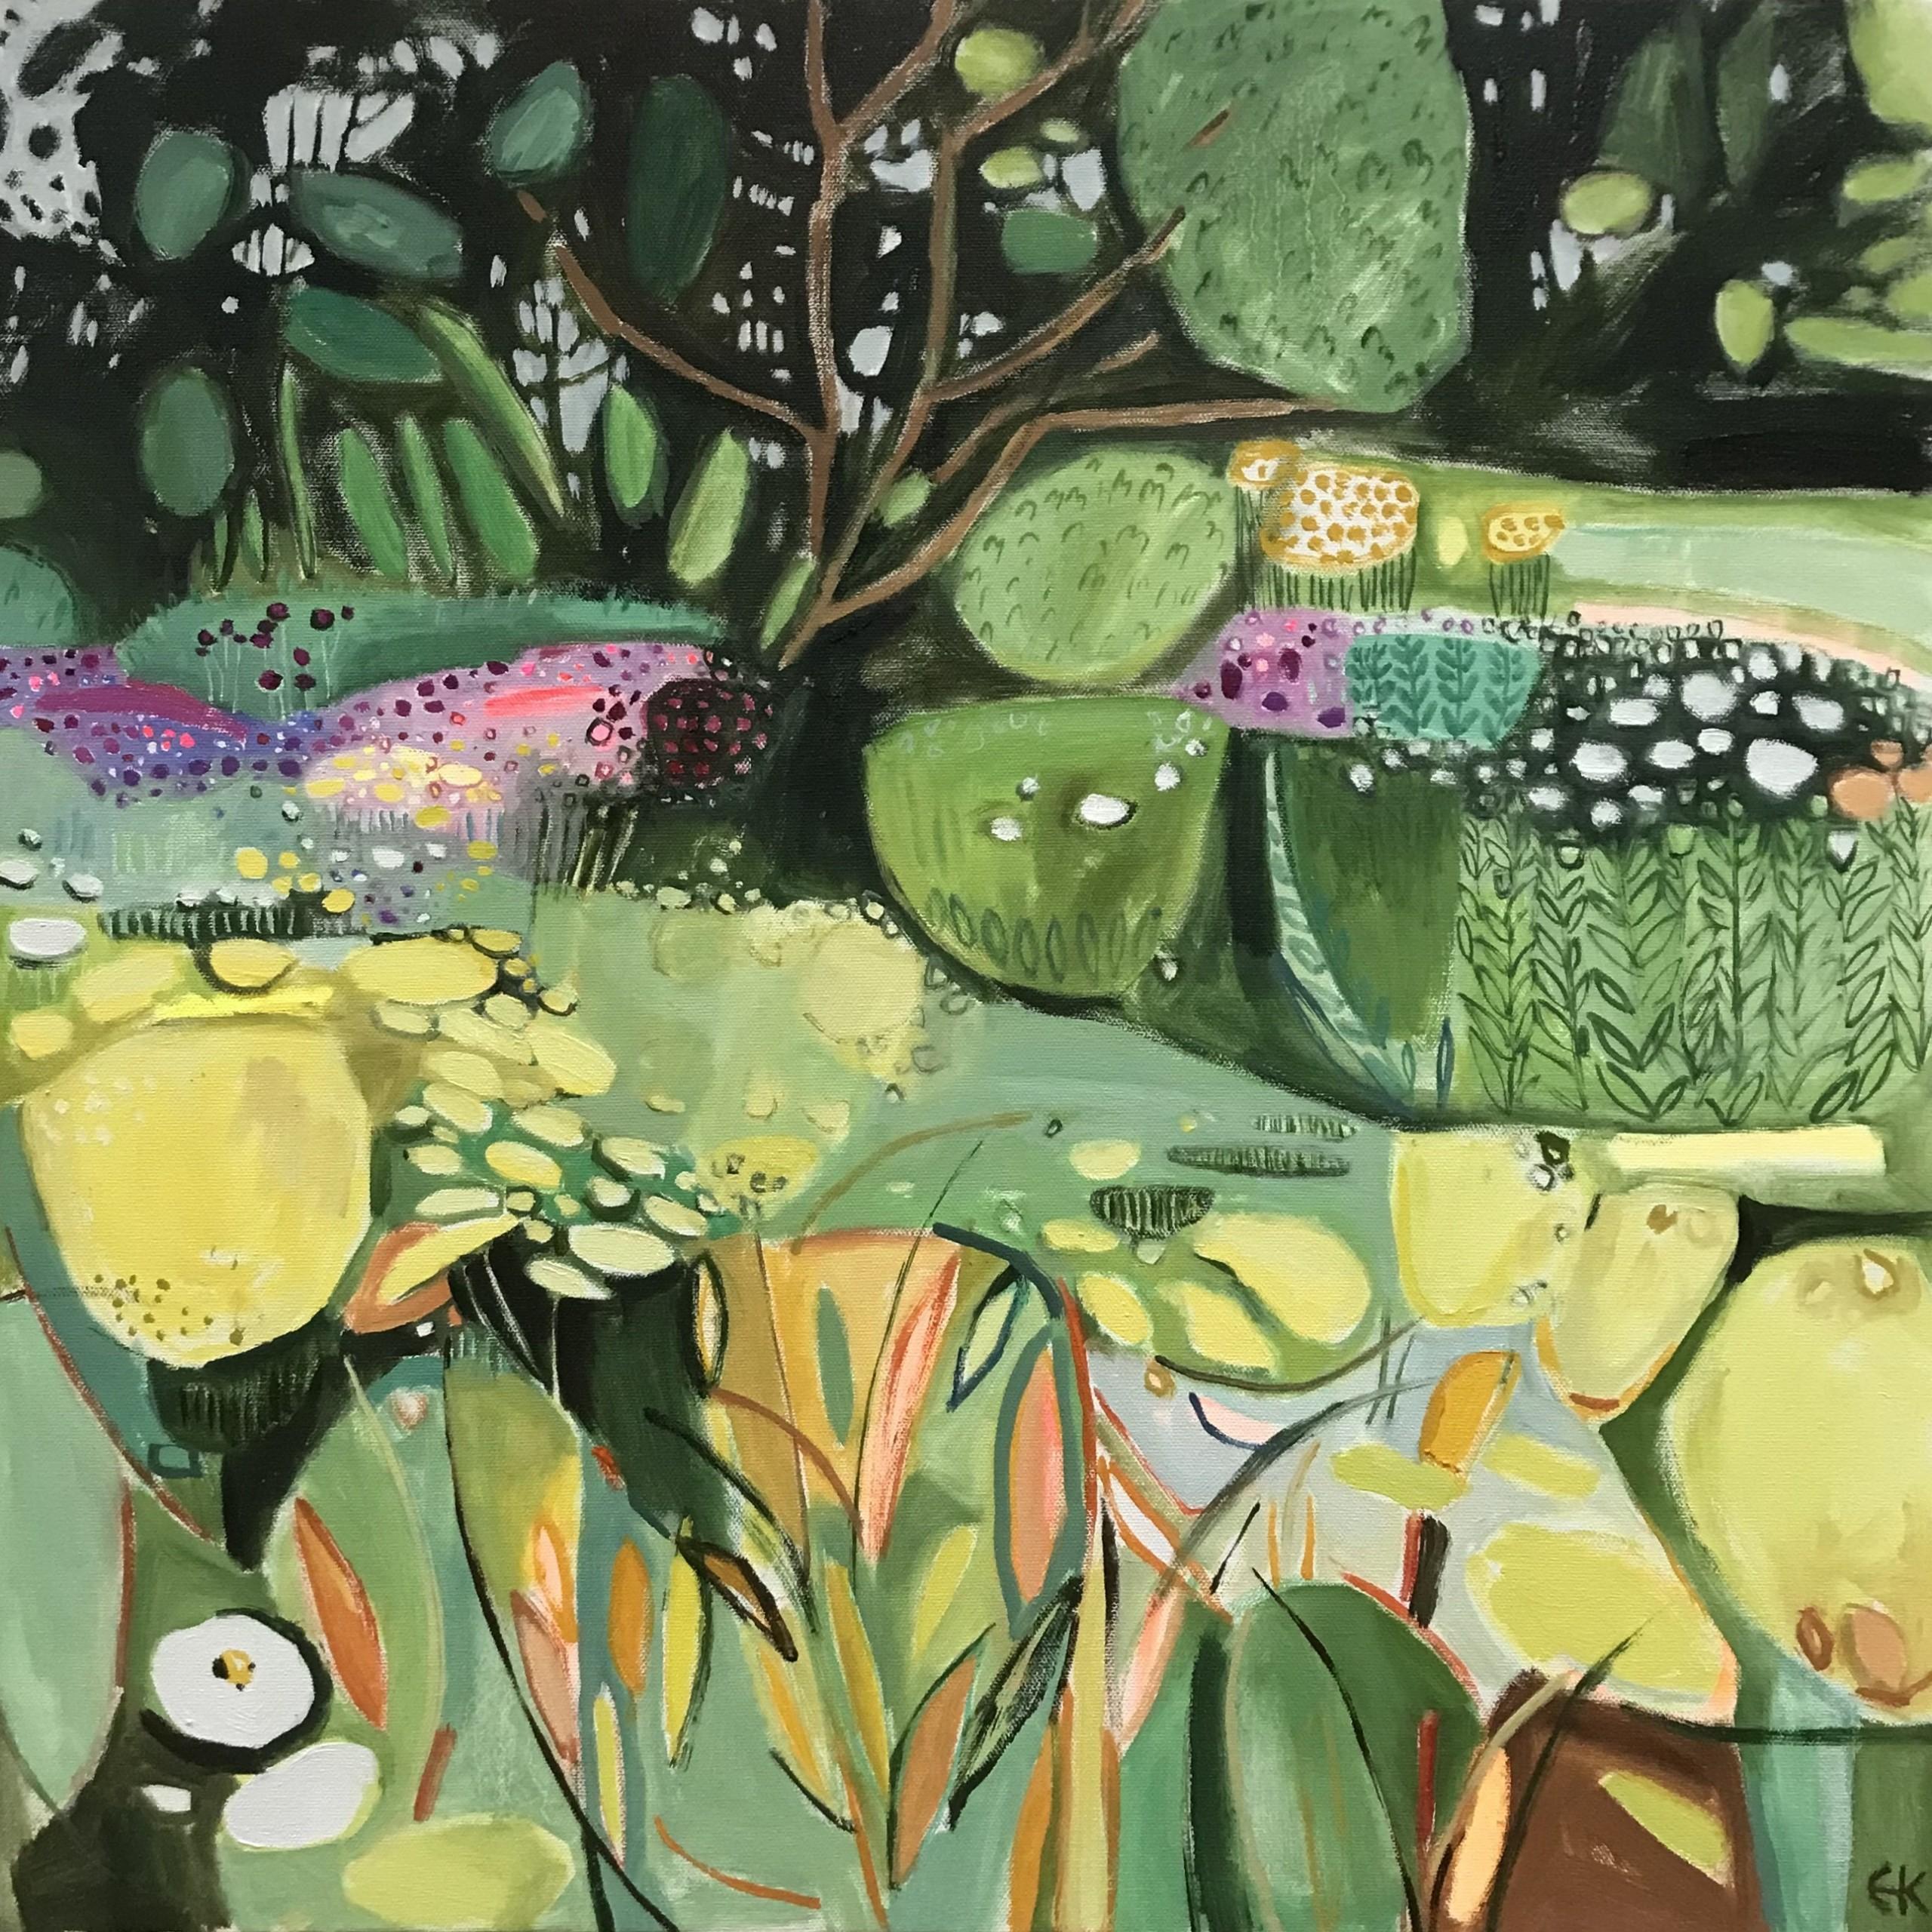 Jardin de cottage avec Achillea II par Elaine Kazimierczuk [2021]
original et signé à la main par l'artiste 

huile et acrylique sur toile

Taille de l'image : H:60 cm x L:60 cm

Taille complète de l'œuvre non encadrée : H:60 cm x L:60 cm x